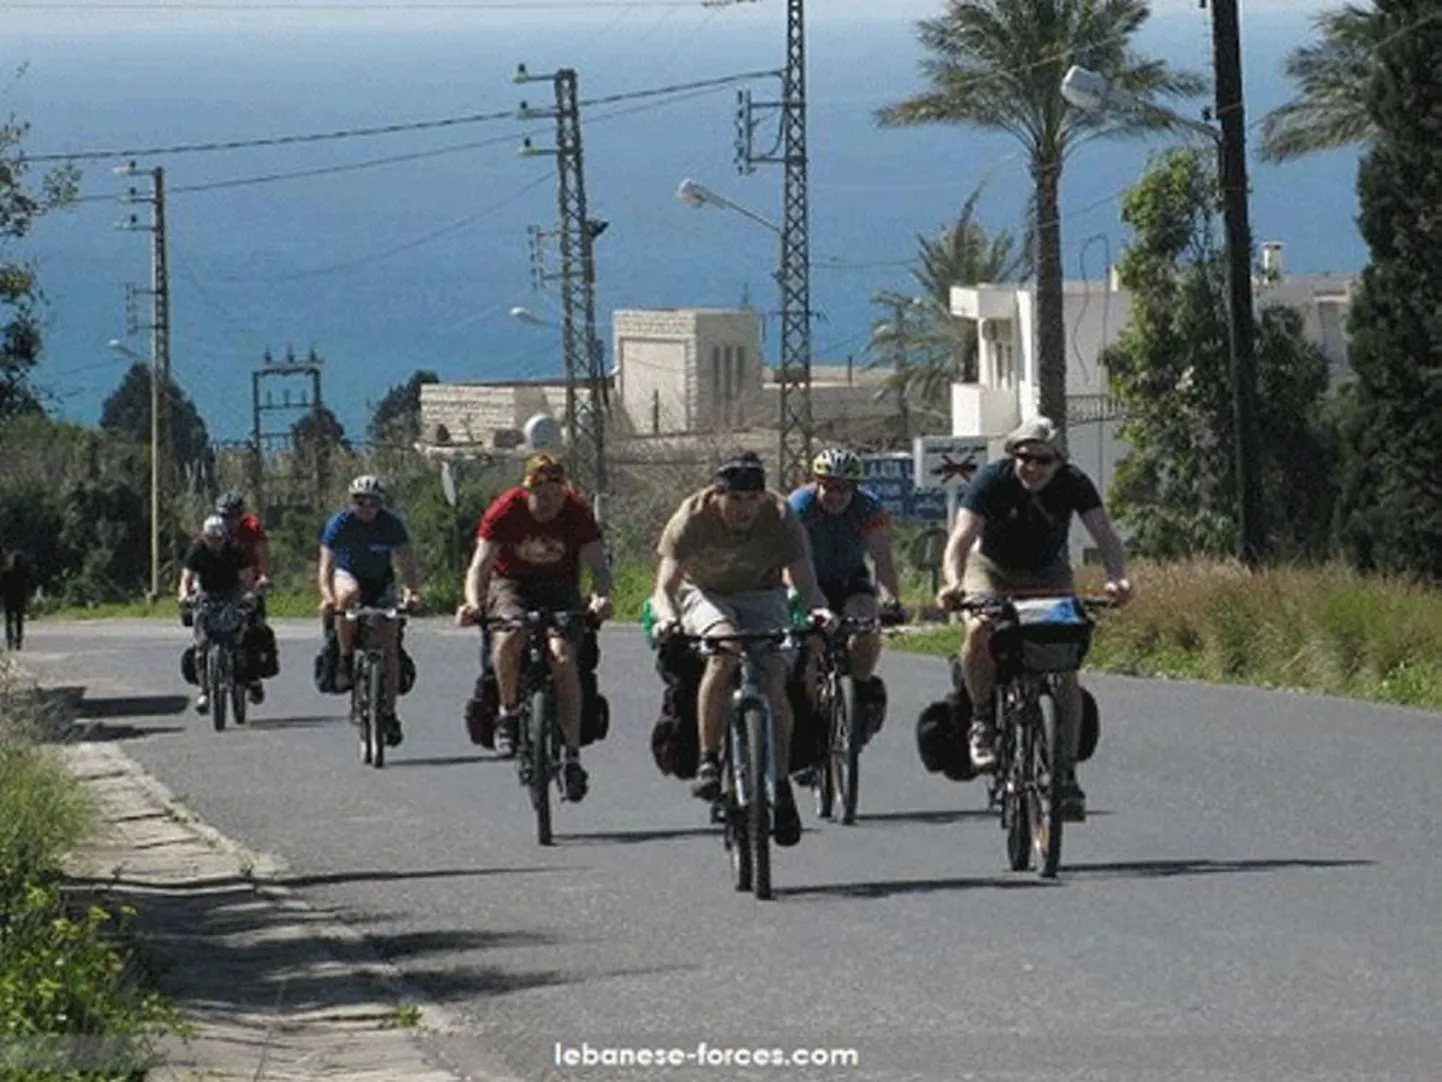 See foto Eesti jalgrattaturistidest on tehtud Liibanonis mõni aeg enne röövi, kuid kes on foto autor ja kuidas see Liibanoni meediaväljaannetesse sattus, ei ole toimetusele teada.